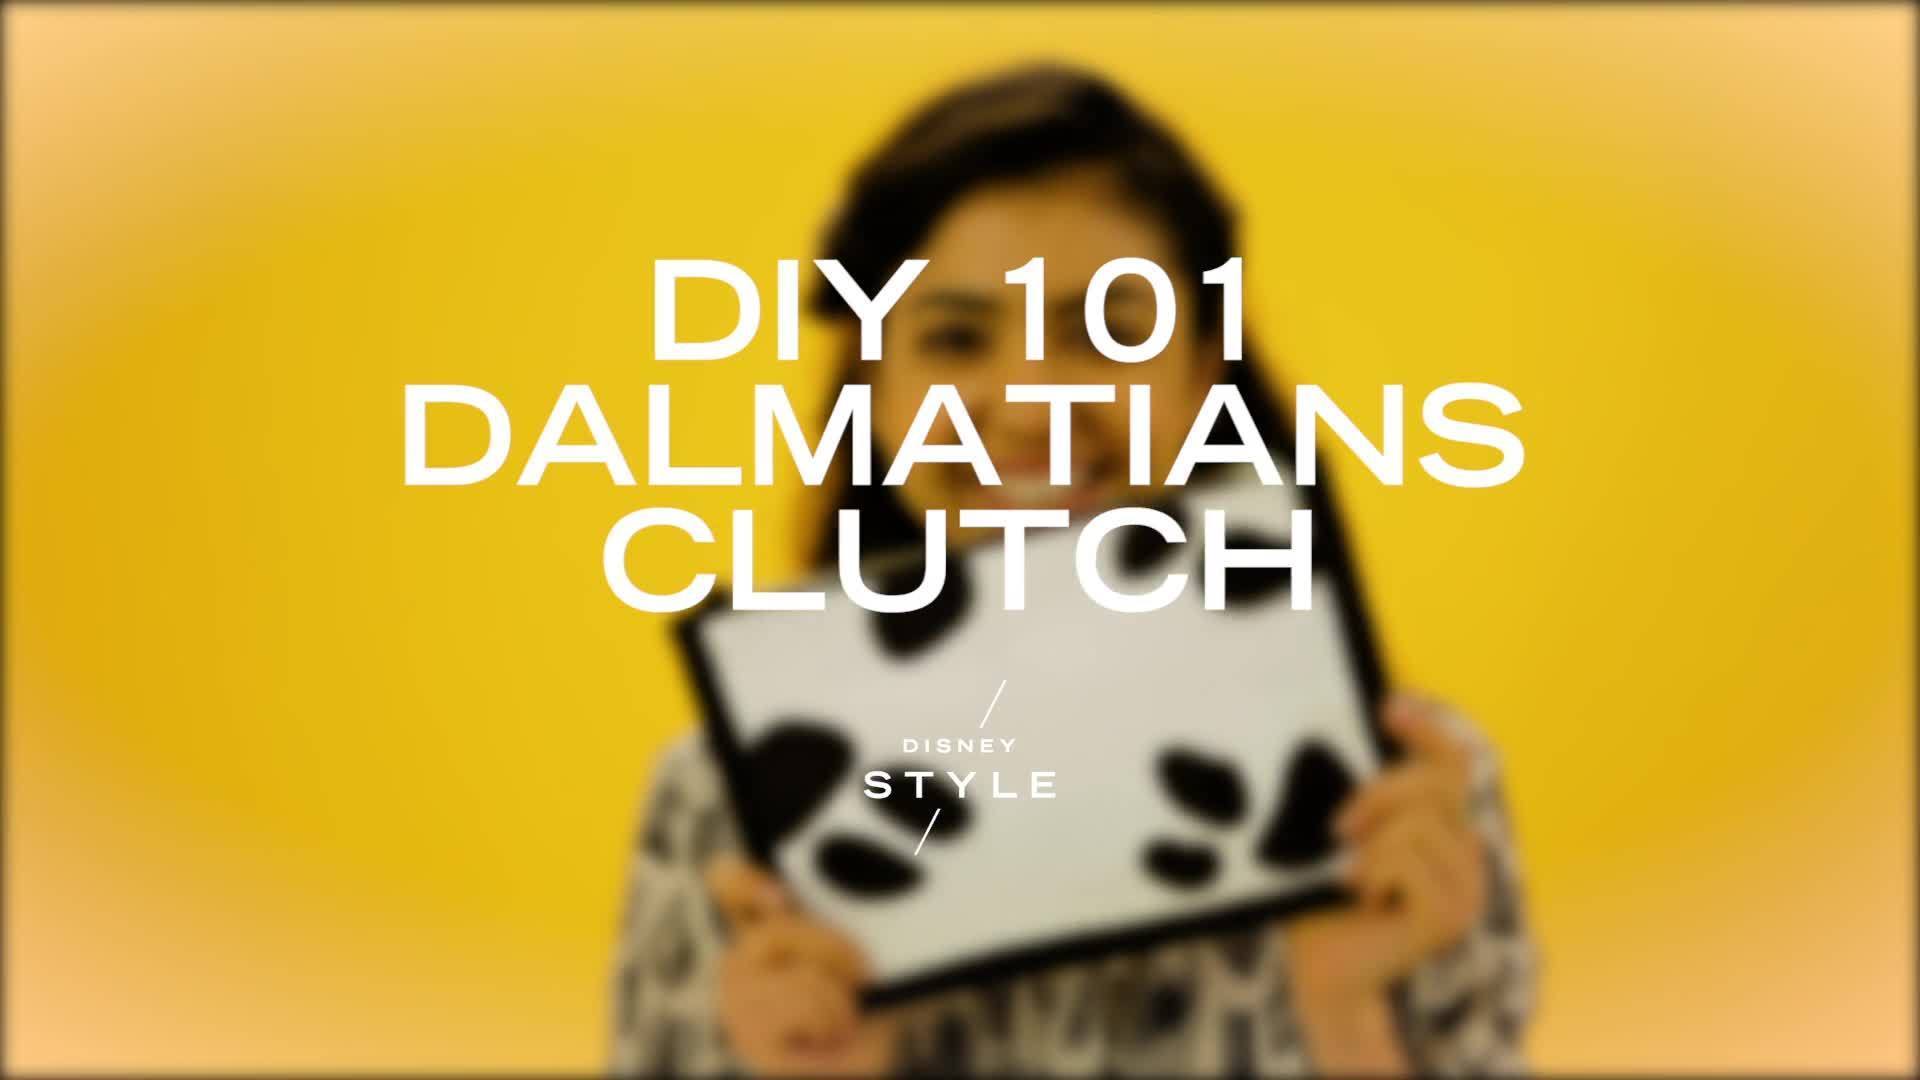 DIY 101 Dalmatians Clutch